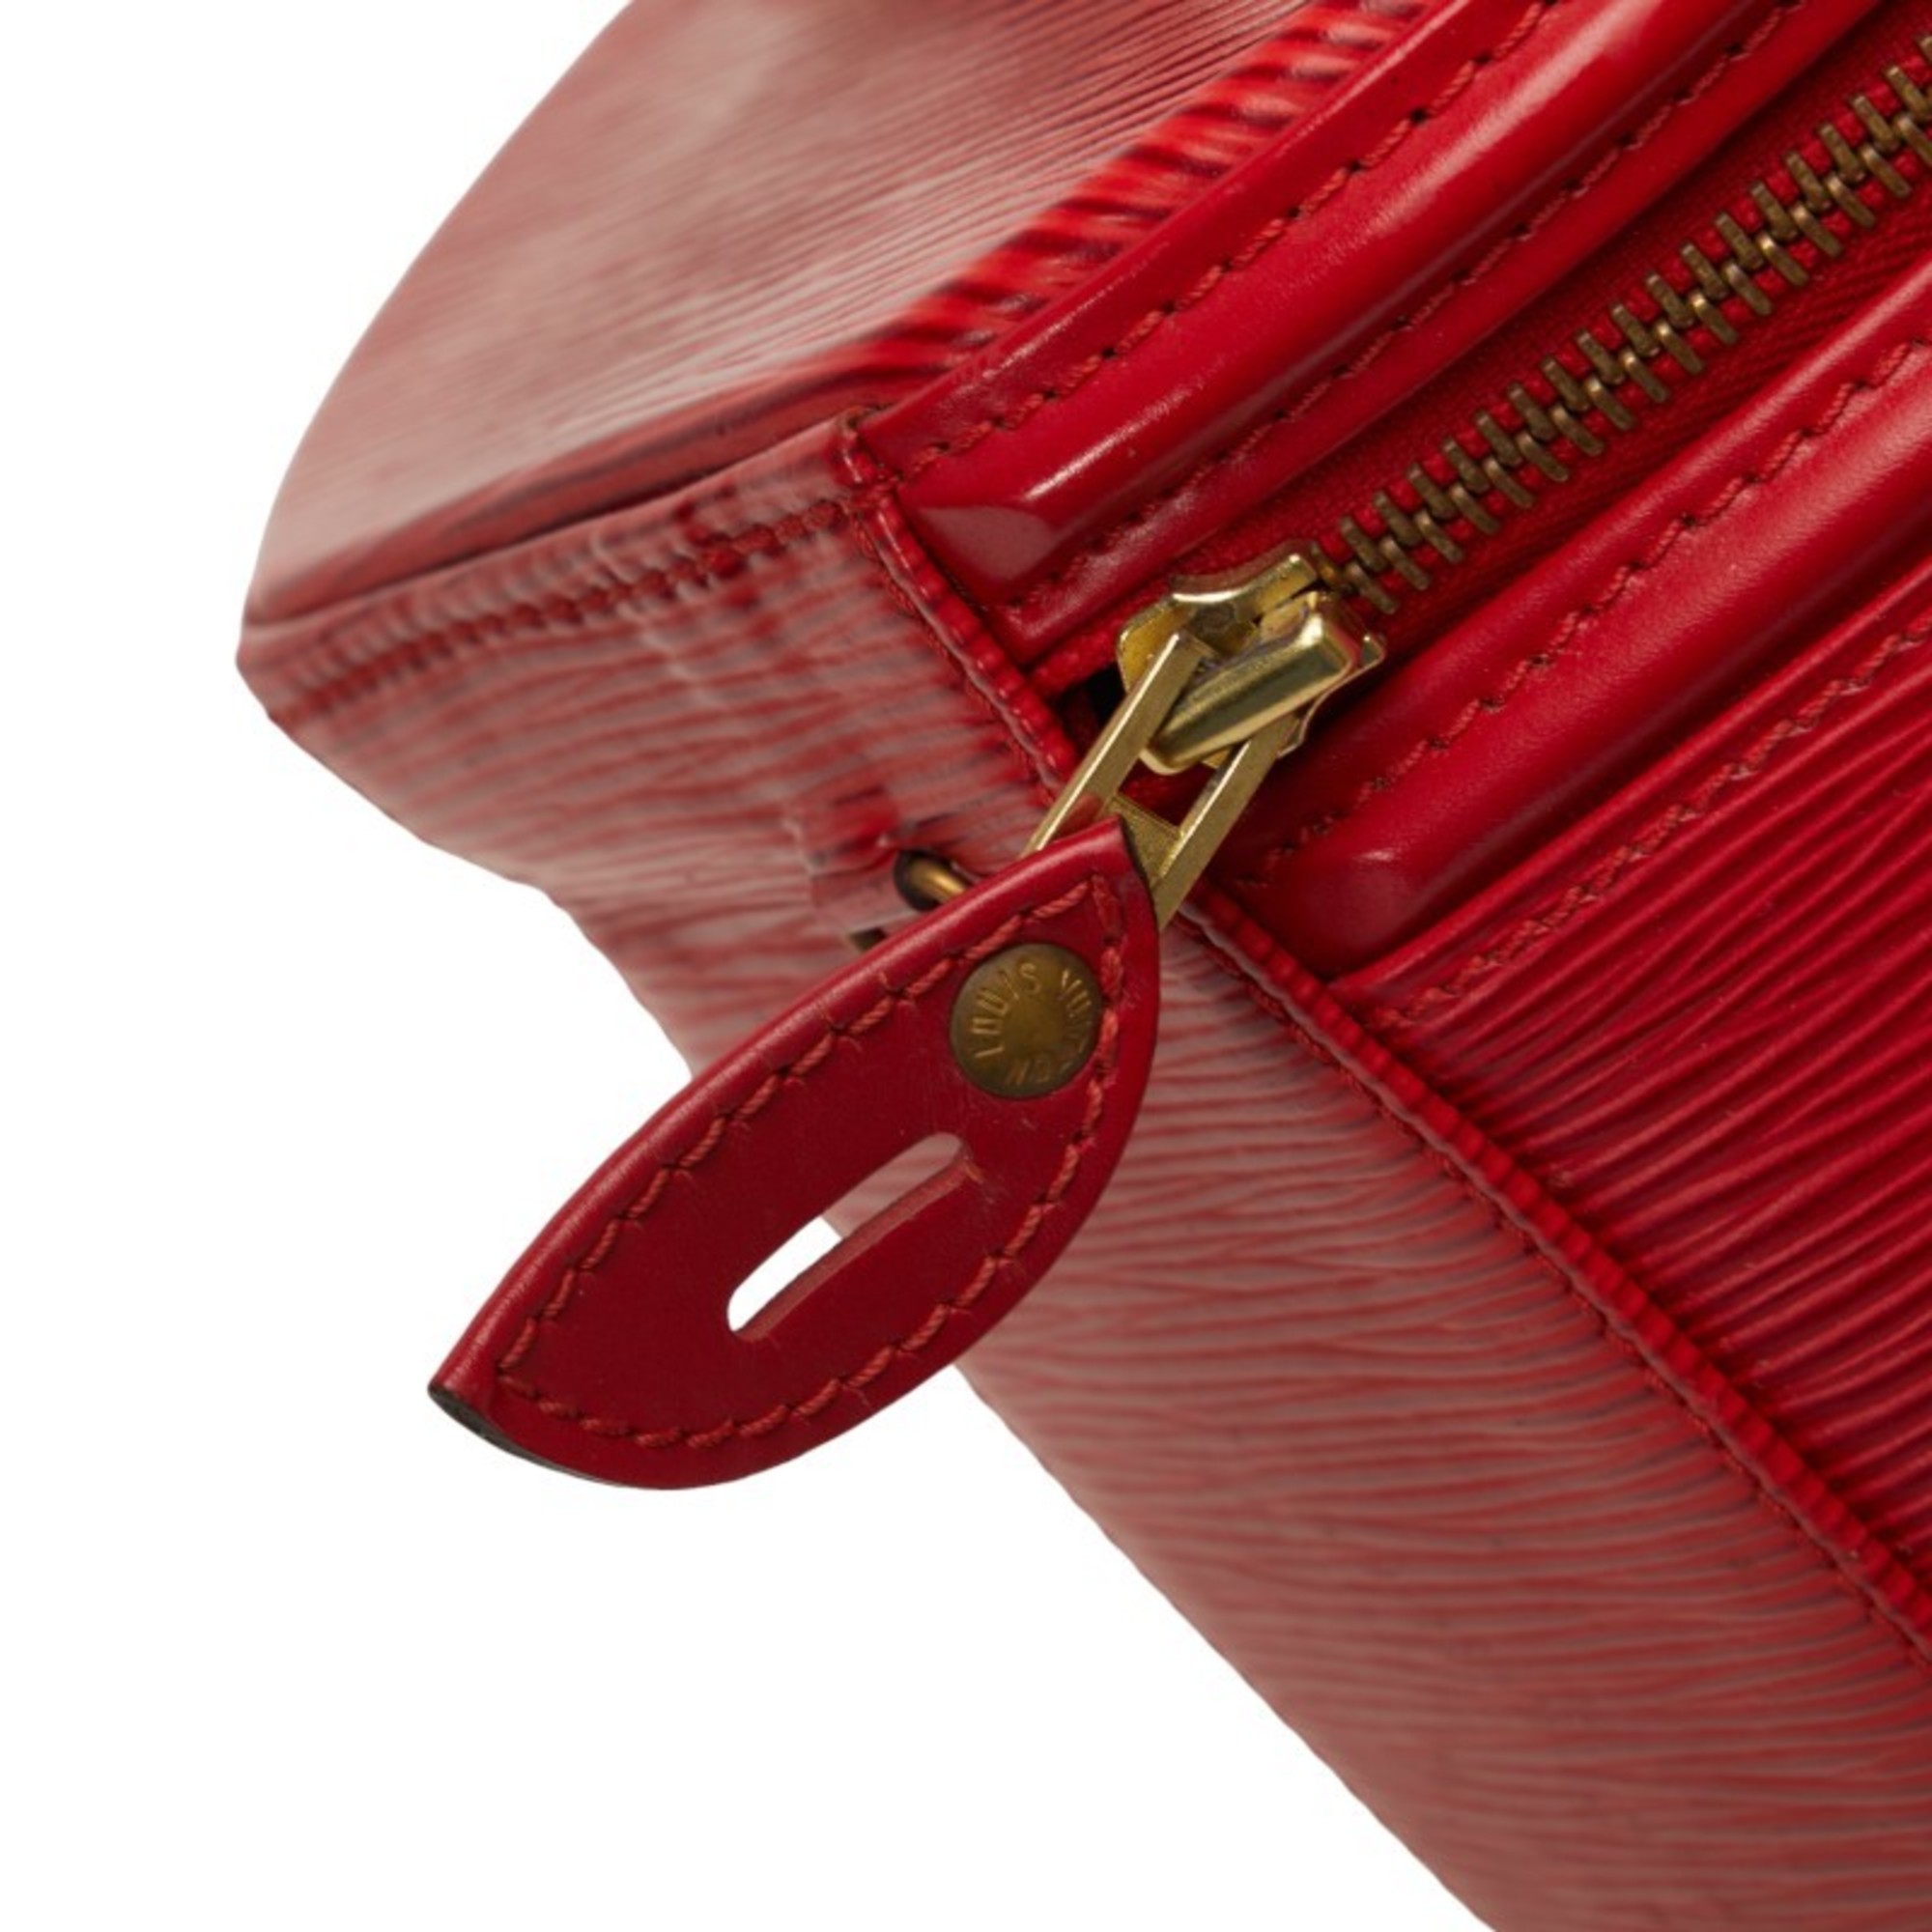 Louis Vuitton Epi Cannes Handbag Vanity Bag M48037 Castilian Red Leather Women's LOUIS VUITTON